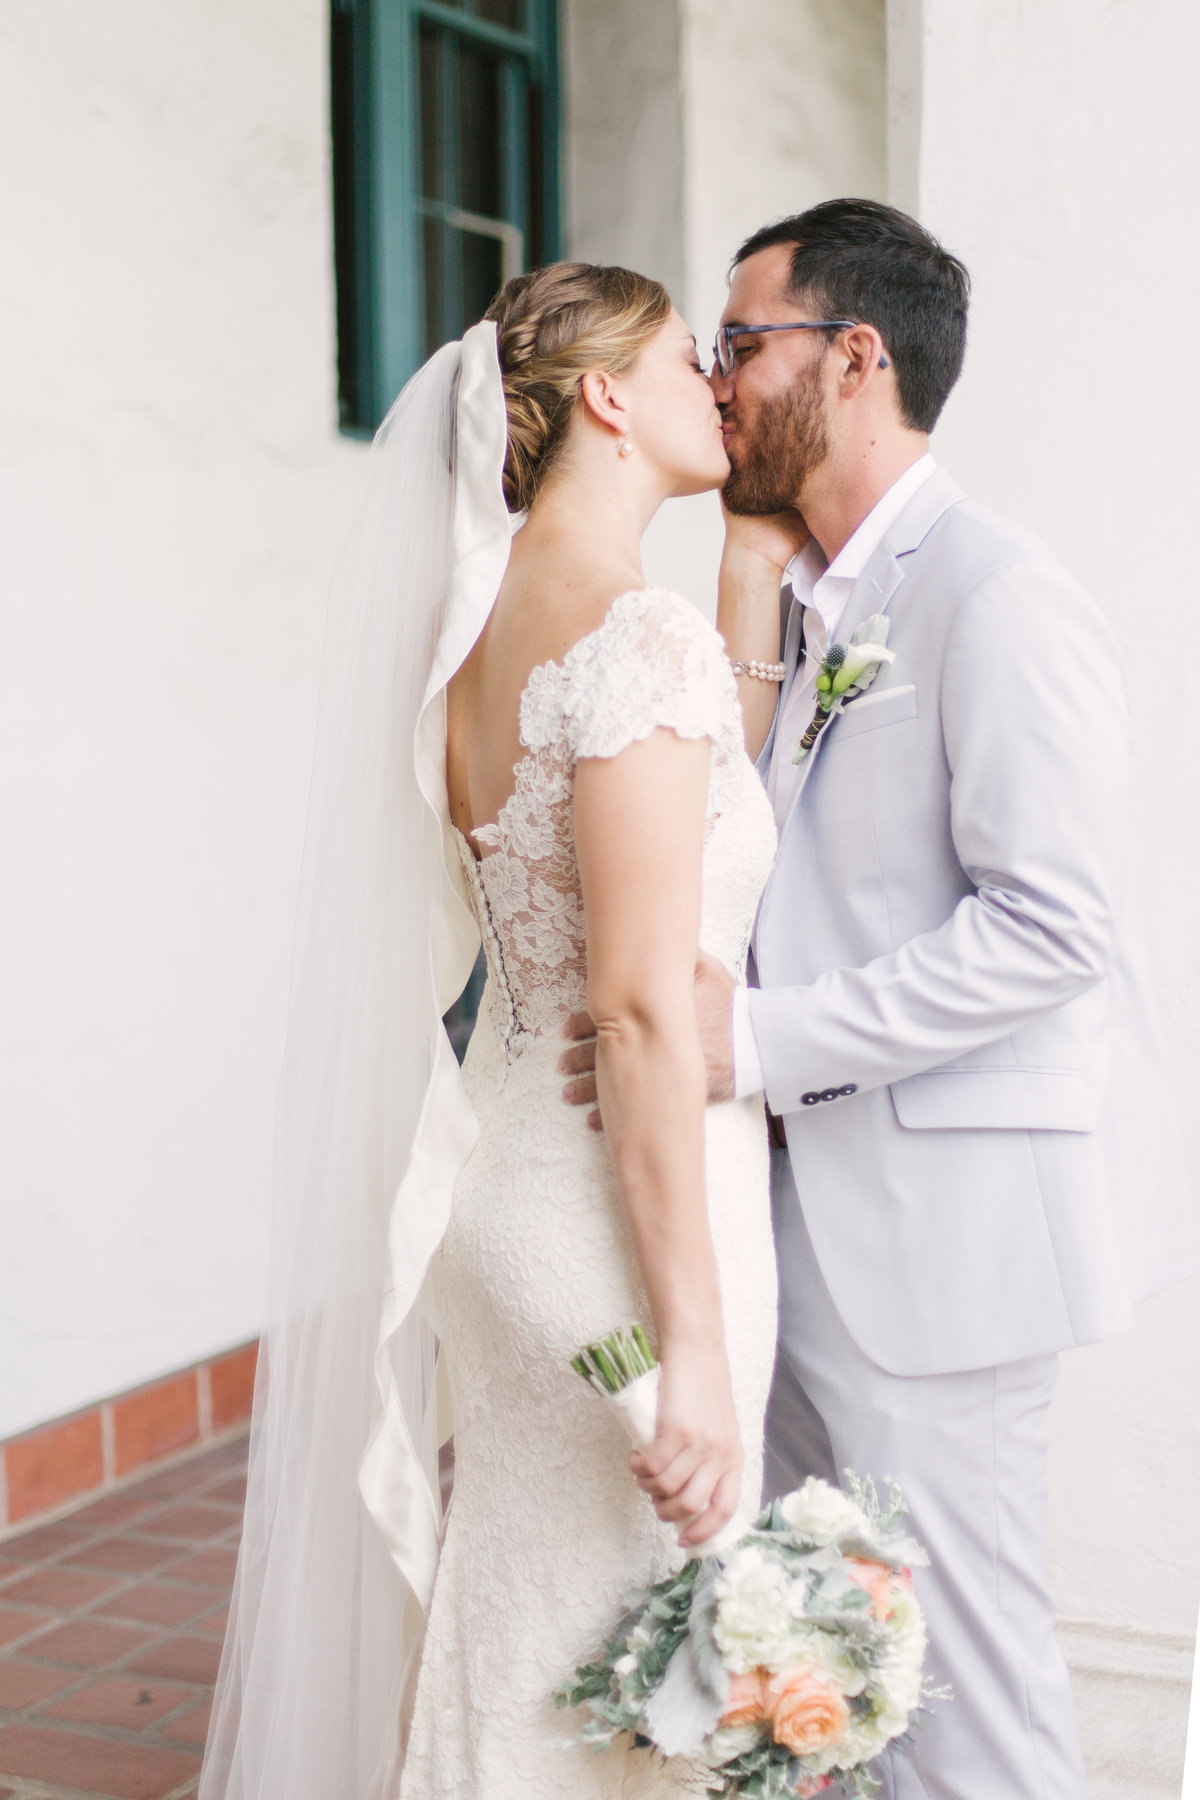 Bride and groom kiss at Santa Barbara Courthouse wedding